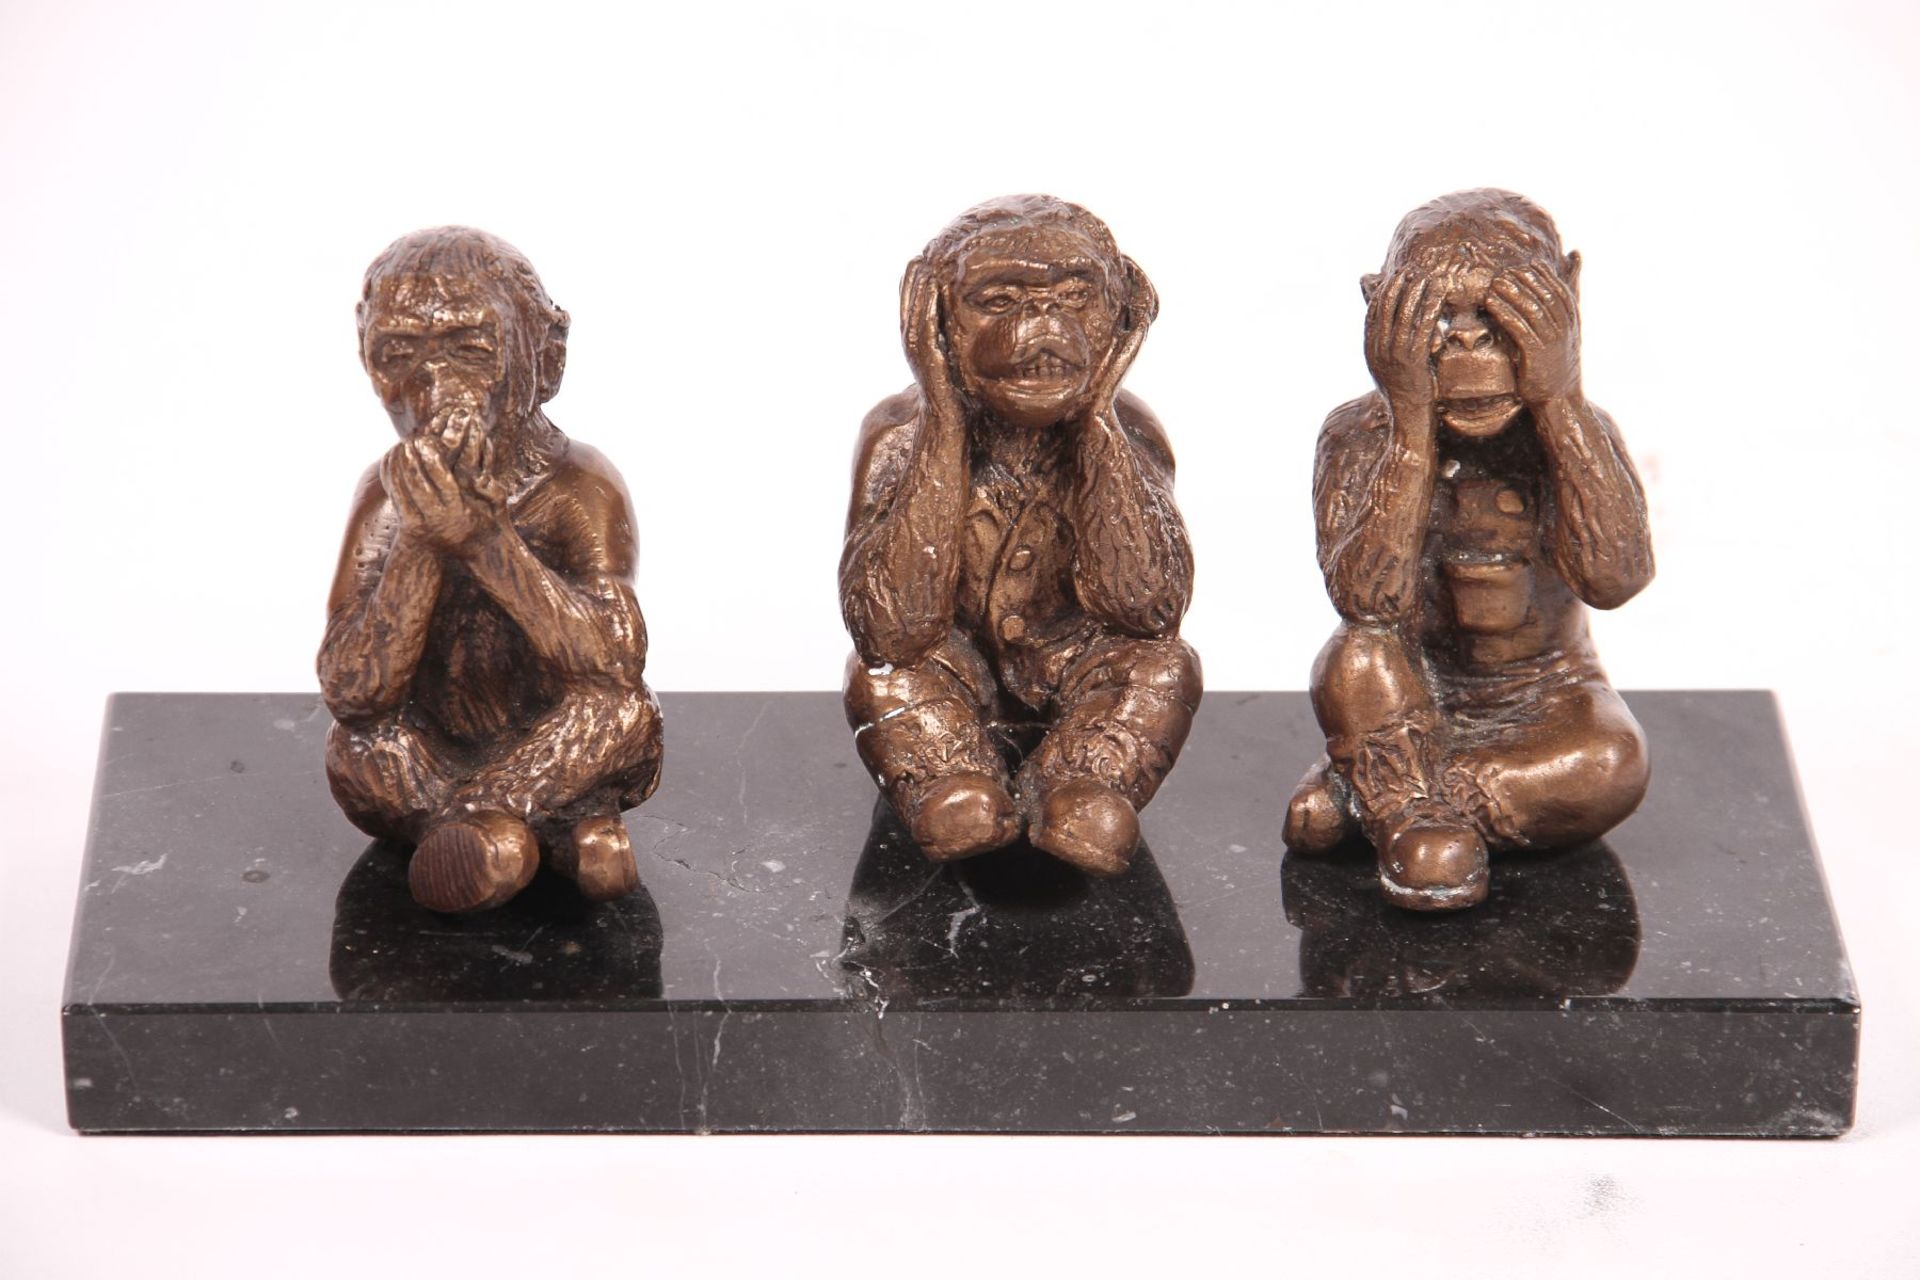 3 monkeys, "Do not hear, do not see, do not speak", bronze, patinated golden brown, on black